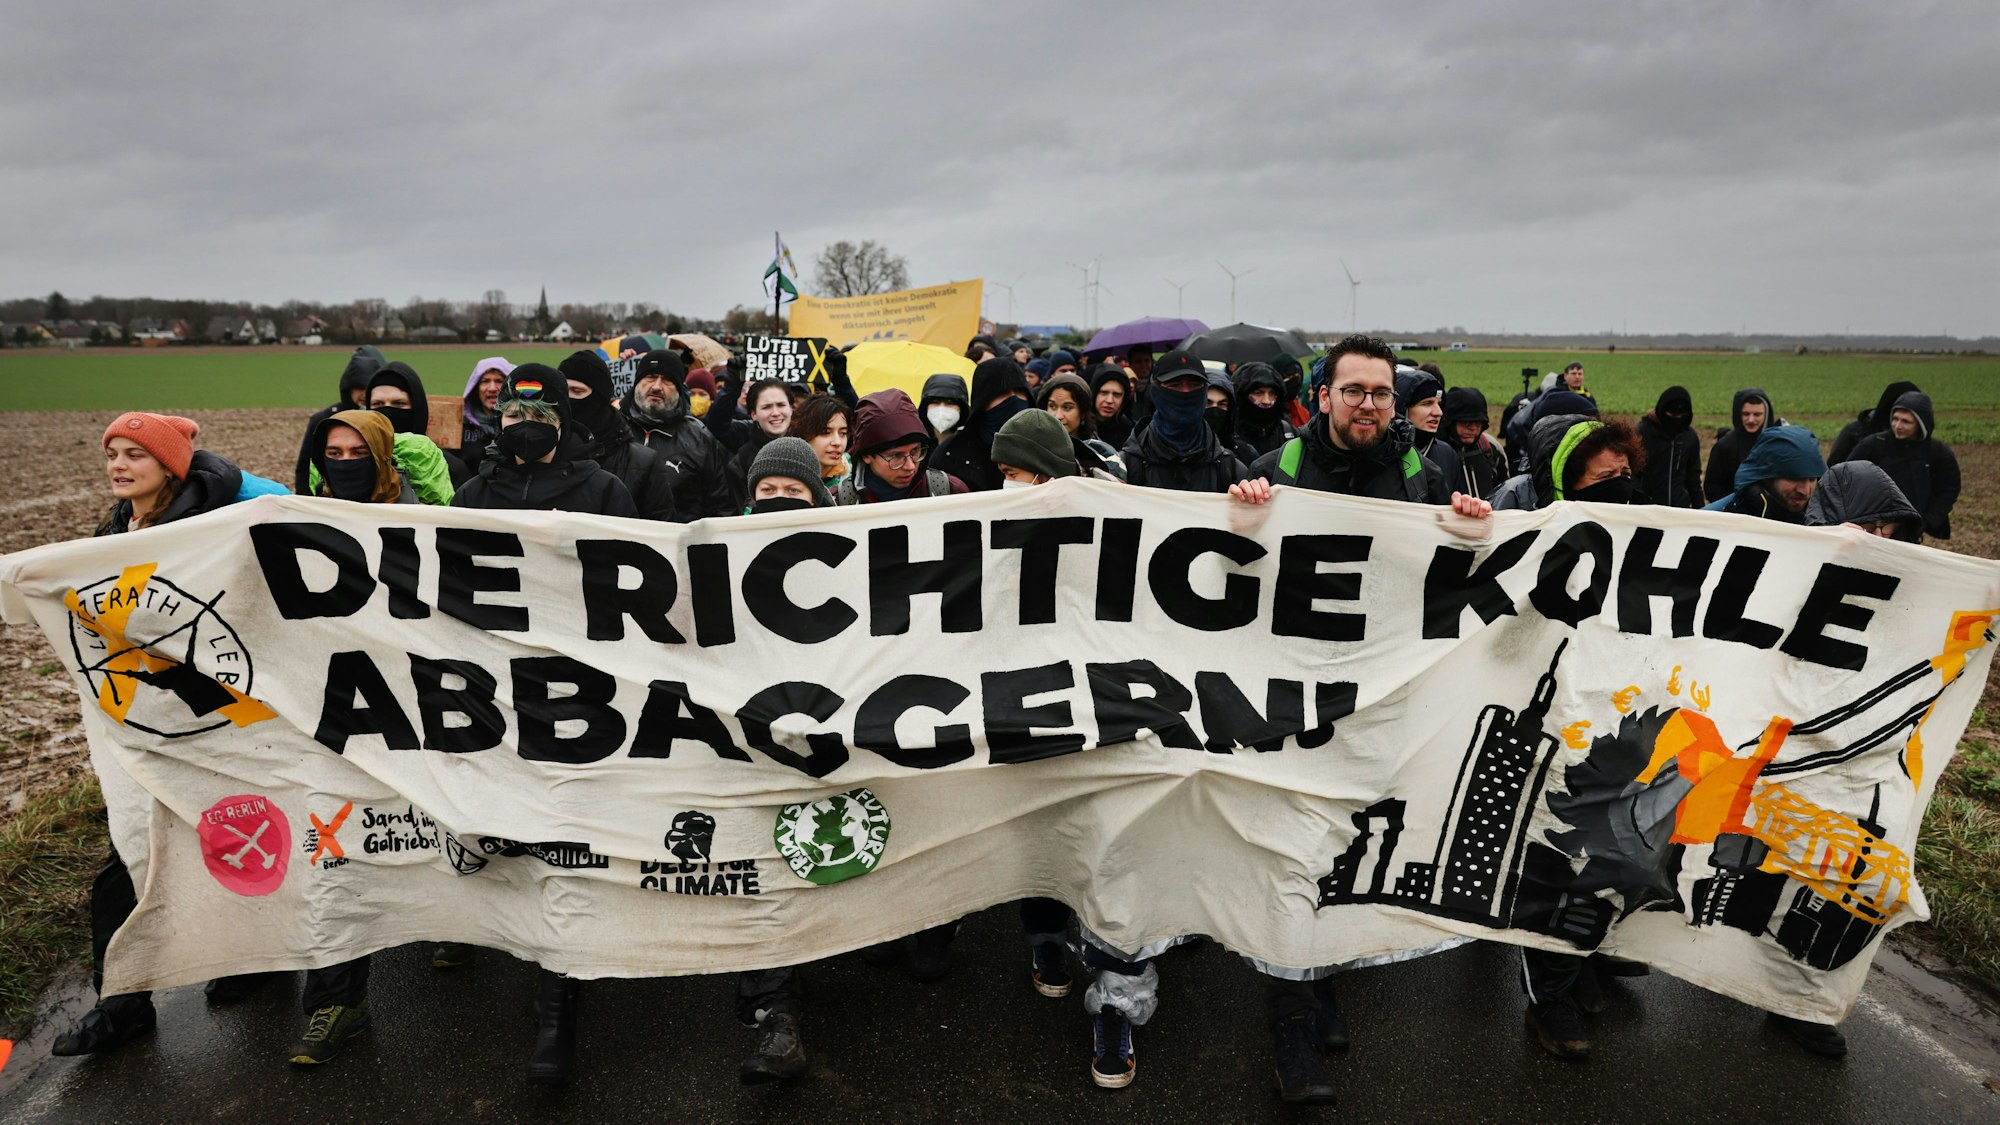 "Die richtige Kohle abbaggern" ist auf dem Transparent zu lesen, das von Demonstranten getragen wird.